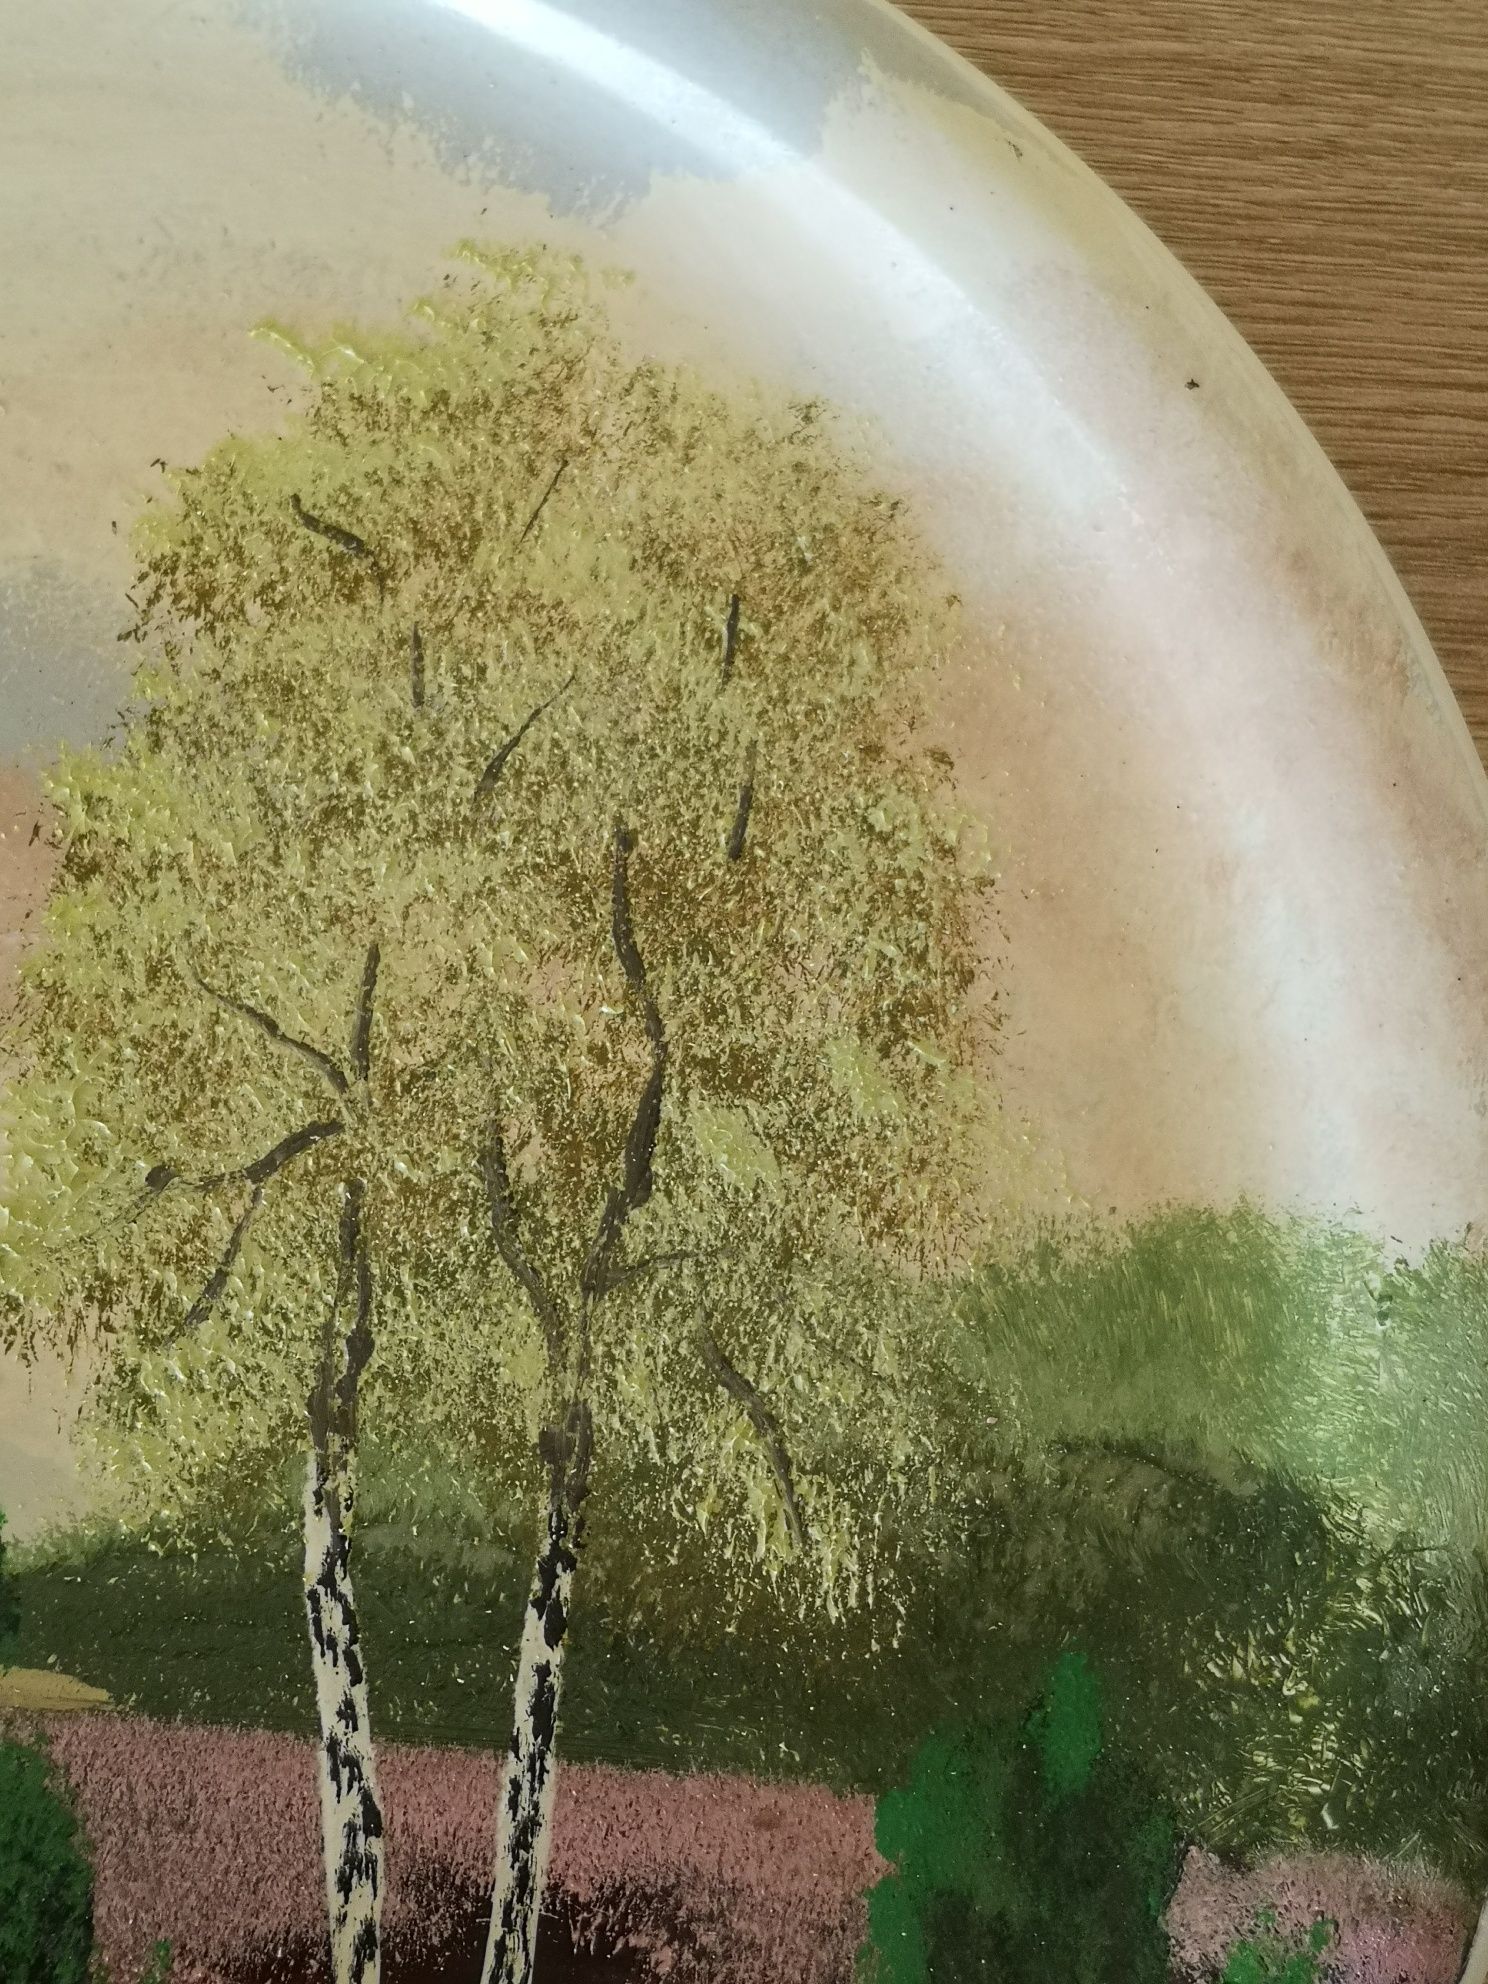 Obraz olejny malowany krajobraz na ceramicznym talerzu